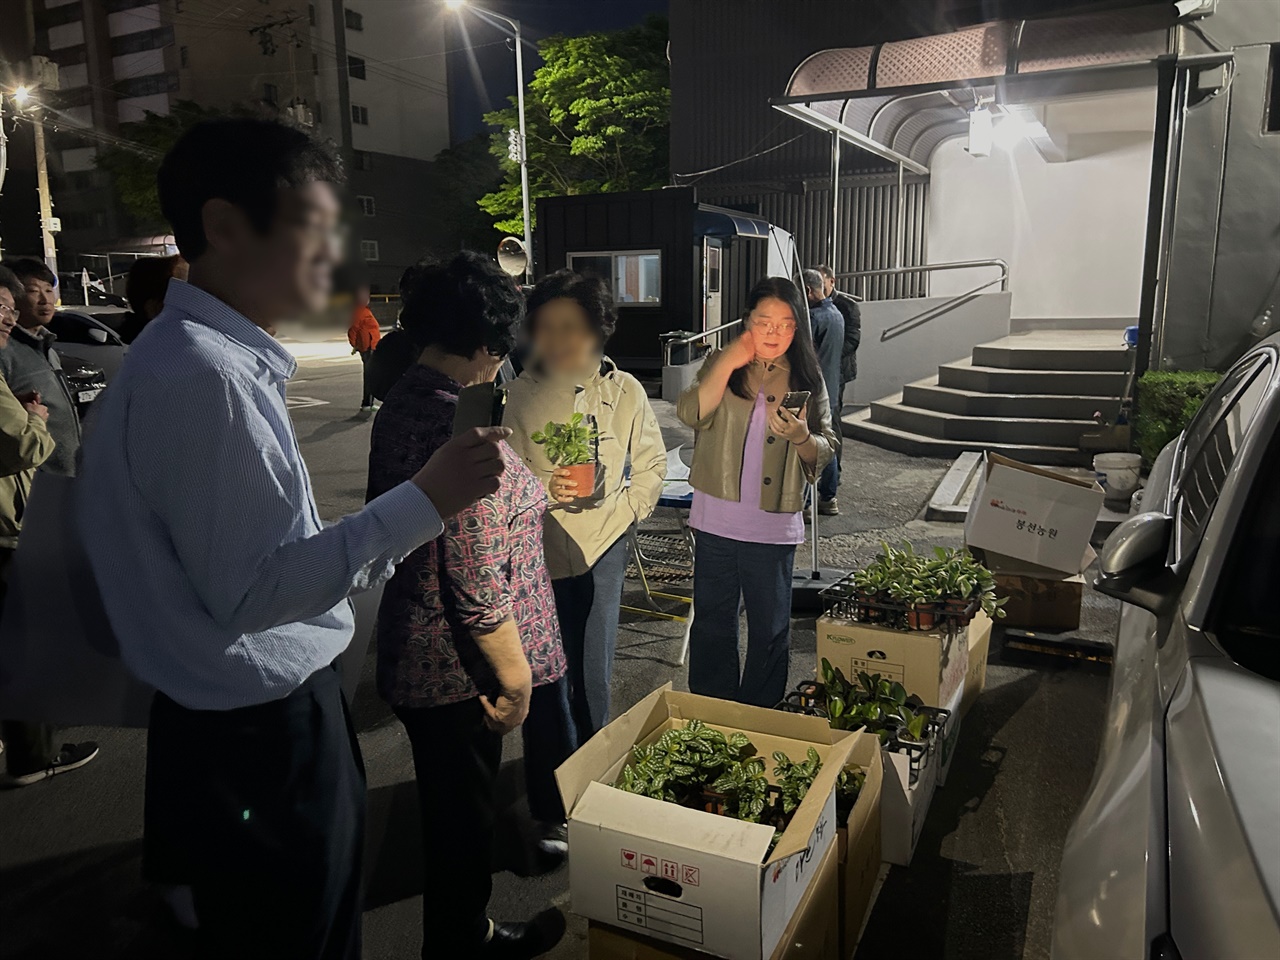 이날 소등 행사와 함께 우주 은하아파트는 미세먼지 캠페인을 함께 실시하면서 홍성군 지속가능발전협의회는 입주민들에게 공기정화식물을 나눠줬다.